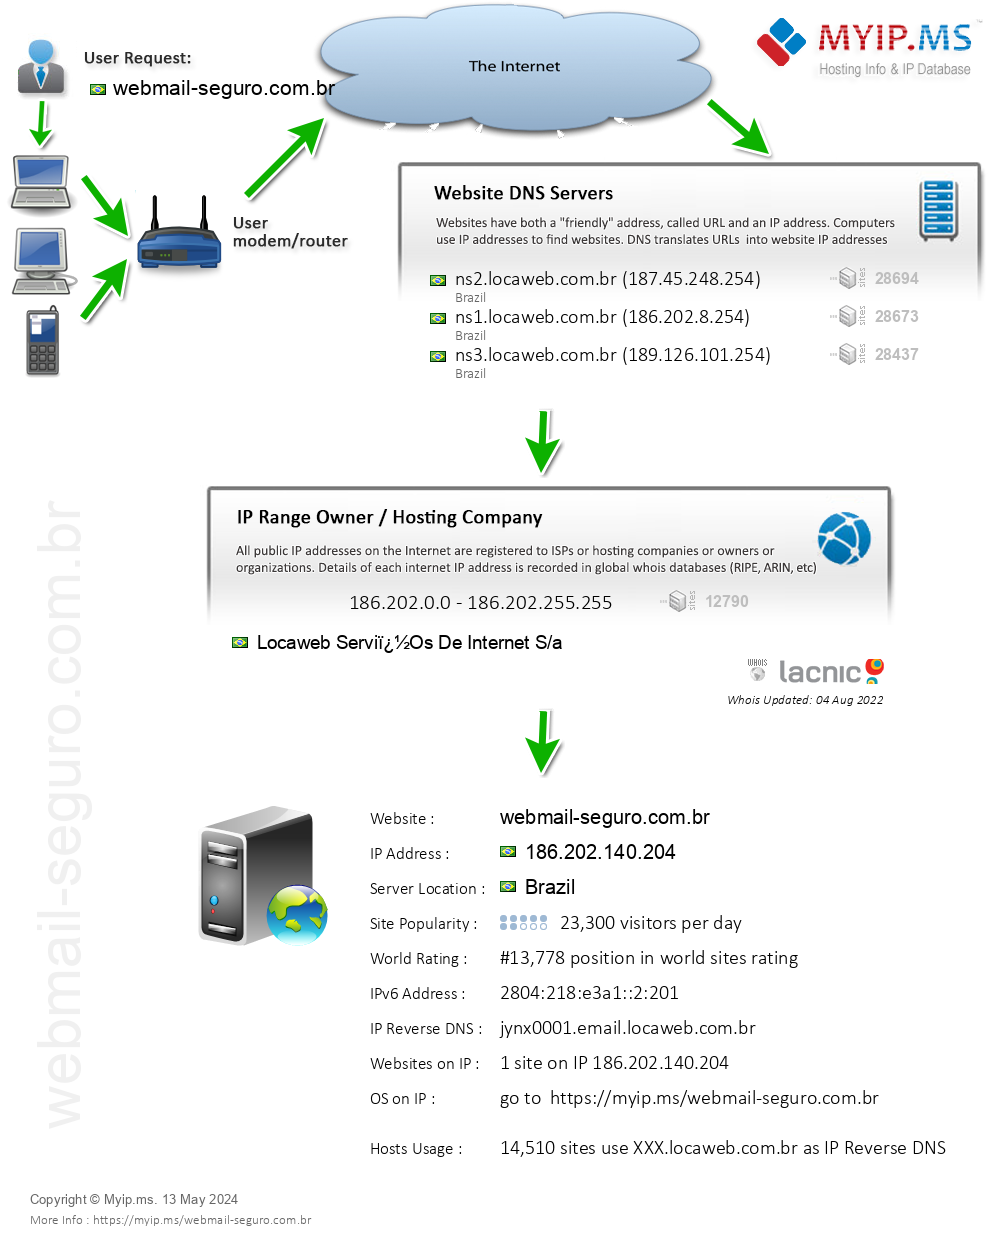 Webmail-seguro.com.br - Website Hosting Visual IP Diagram